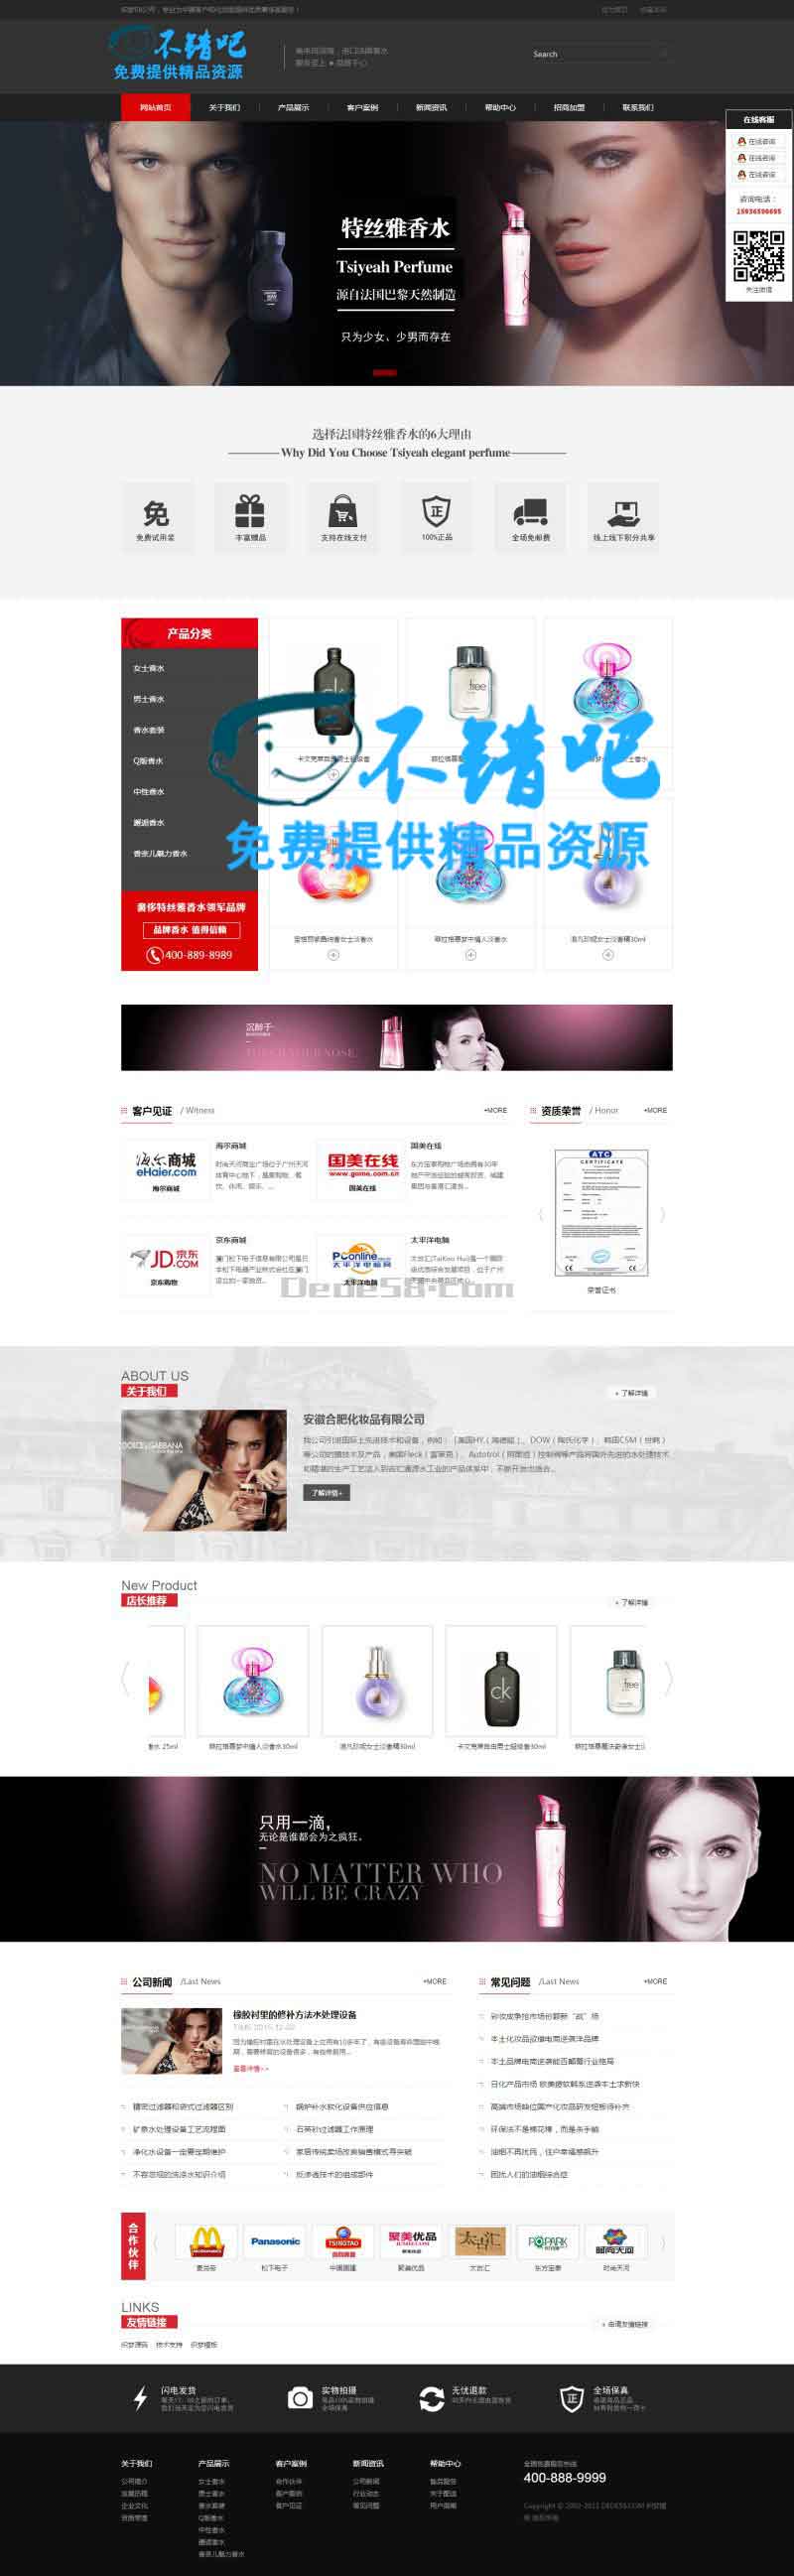 黑色化妆品类企业网站dede模板|黑色化妆品类企业网站源码